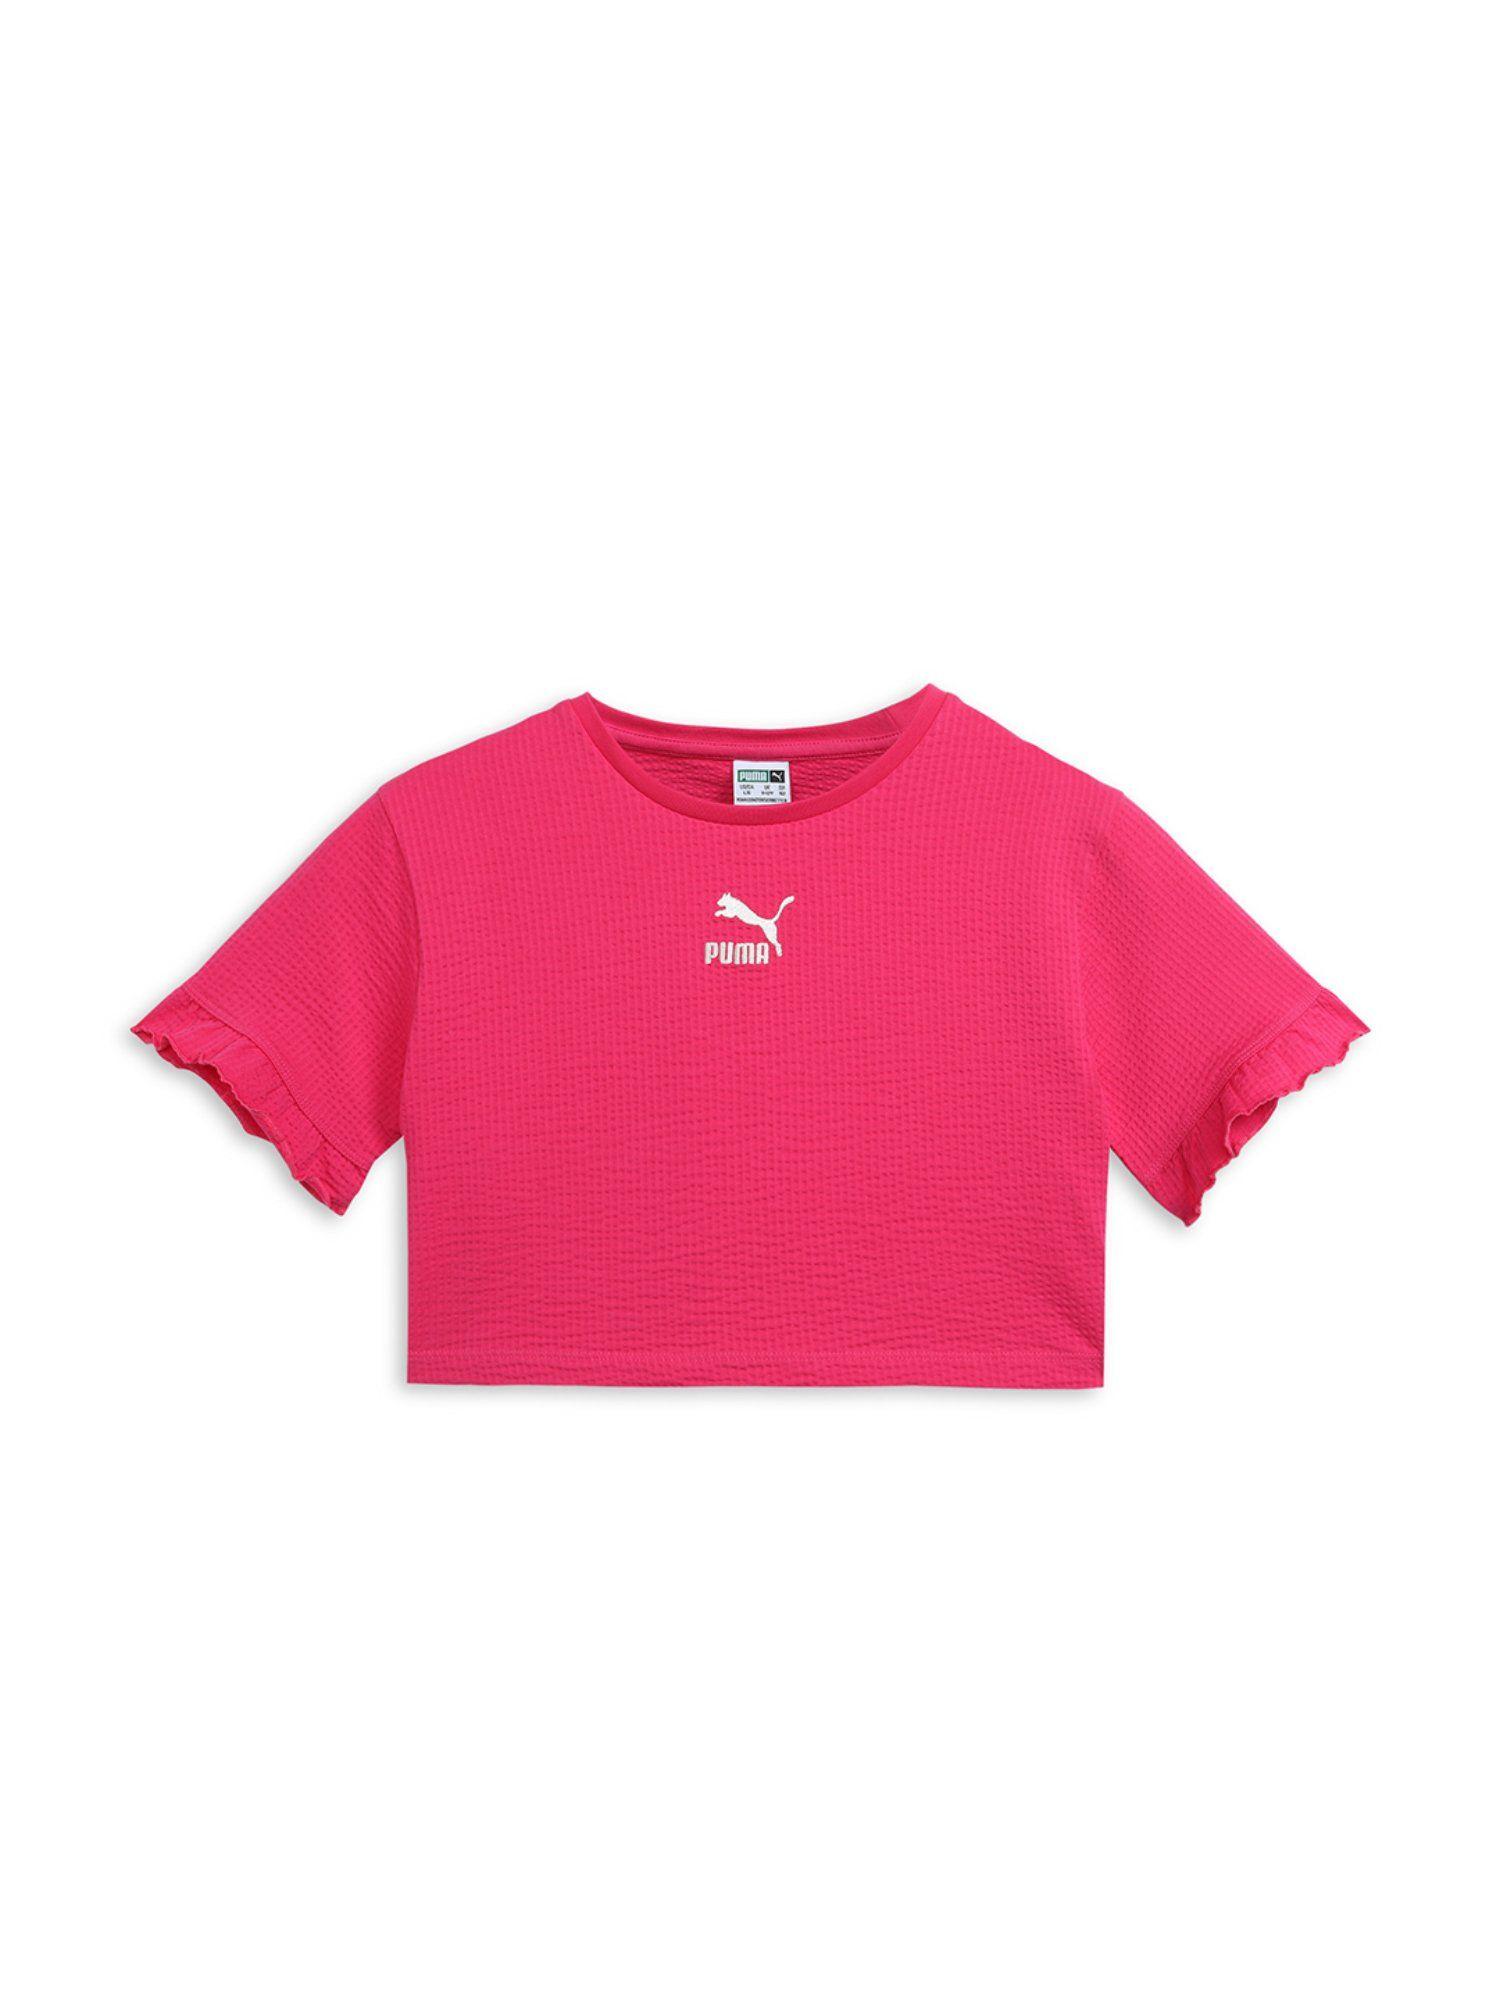 ruffles-g-girls-pink-t-shirt